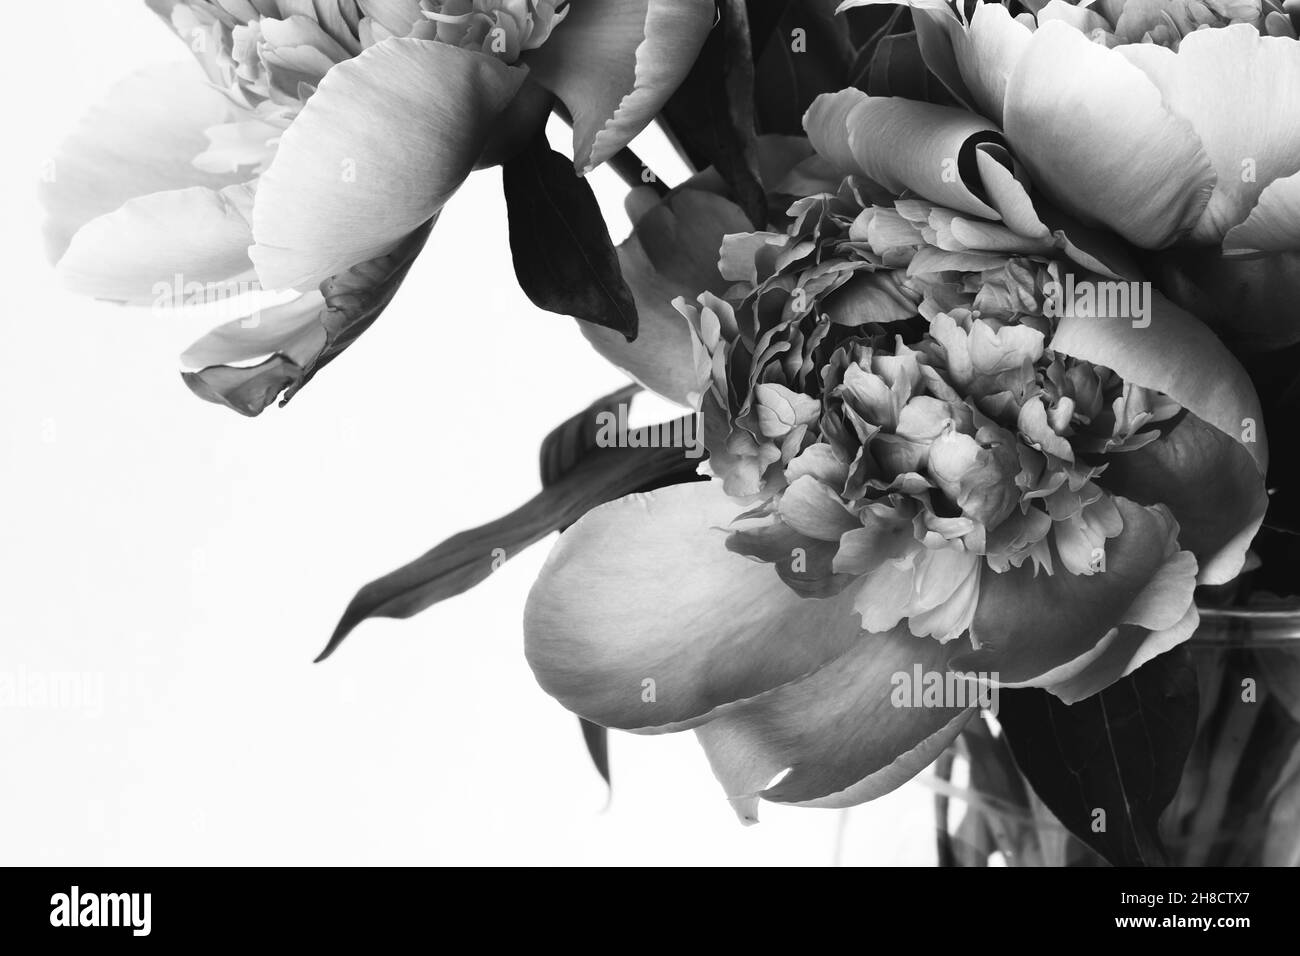 Magnifique bouquet de pivoines.Photo en noir et blanc.Carte à motif fleuri et affiche Banque D'Images